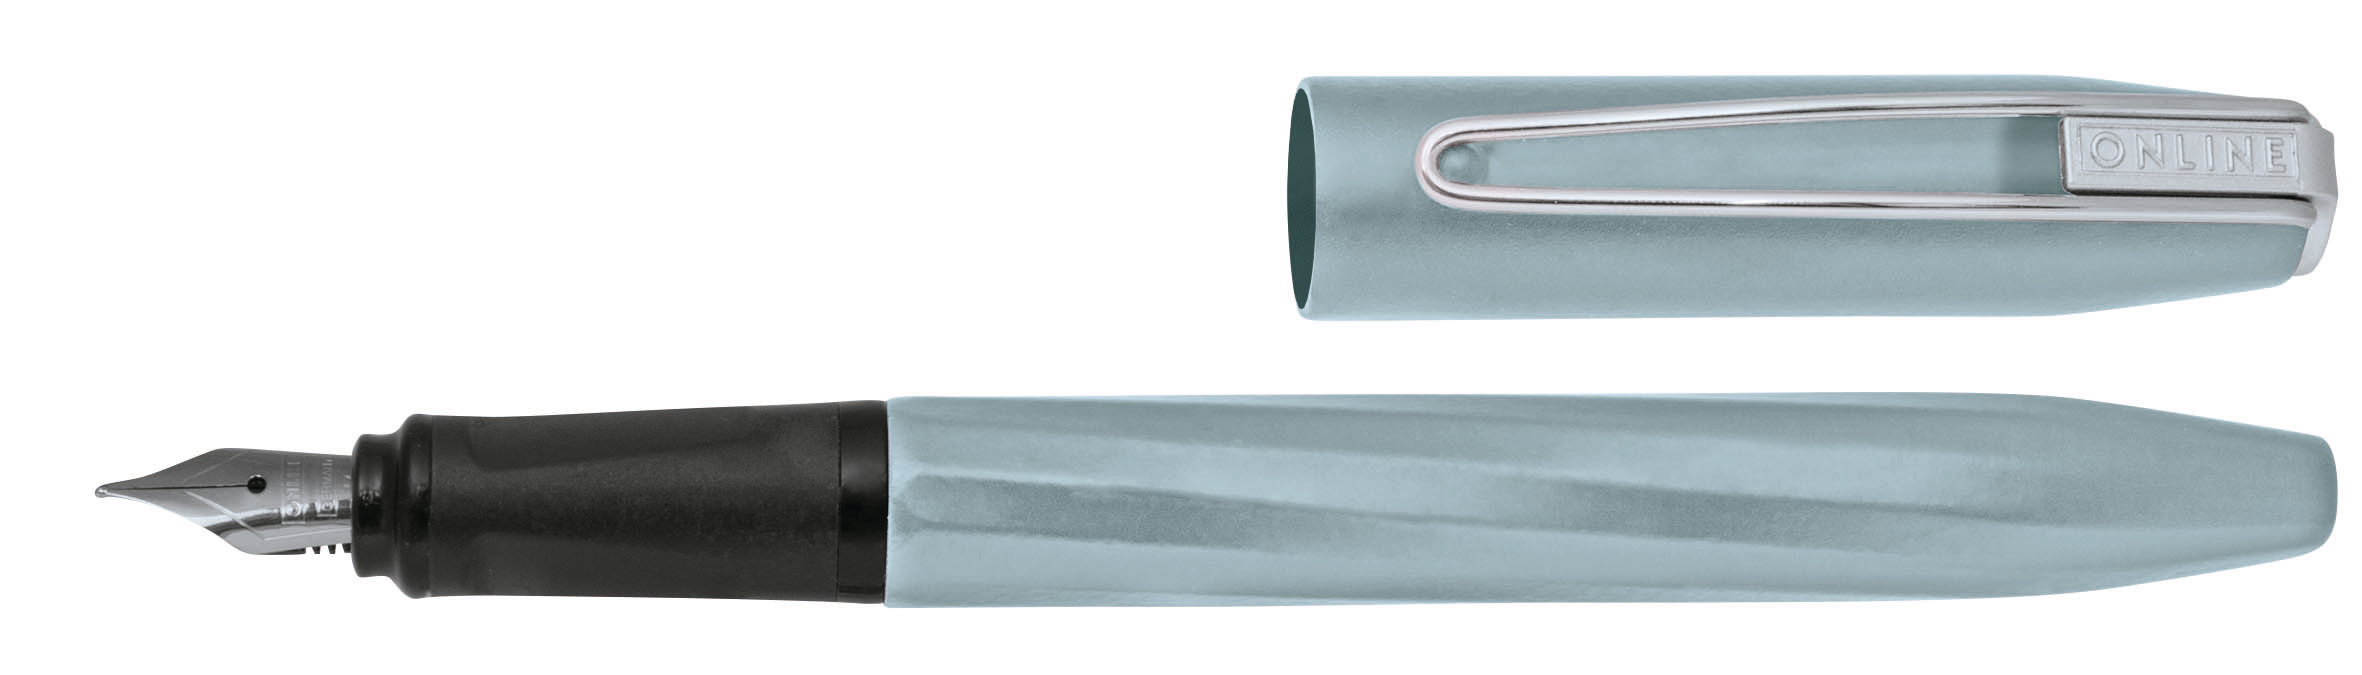 ONLINE Stylo plume Slope 0.5mm 26050/3D Light Grey Light Grey Light Grey Light Grey